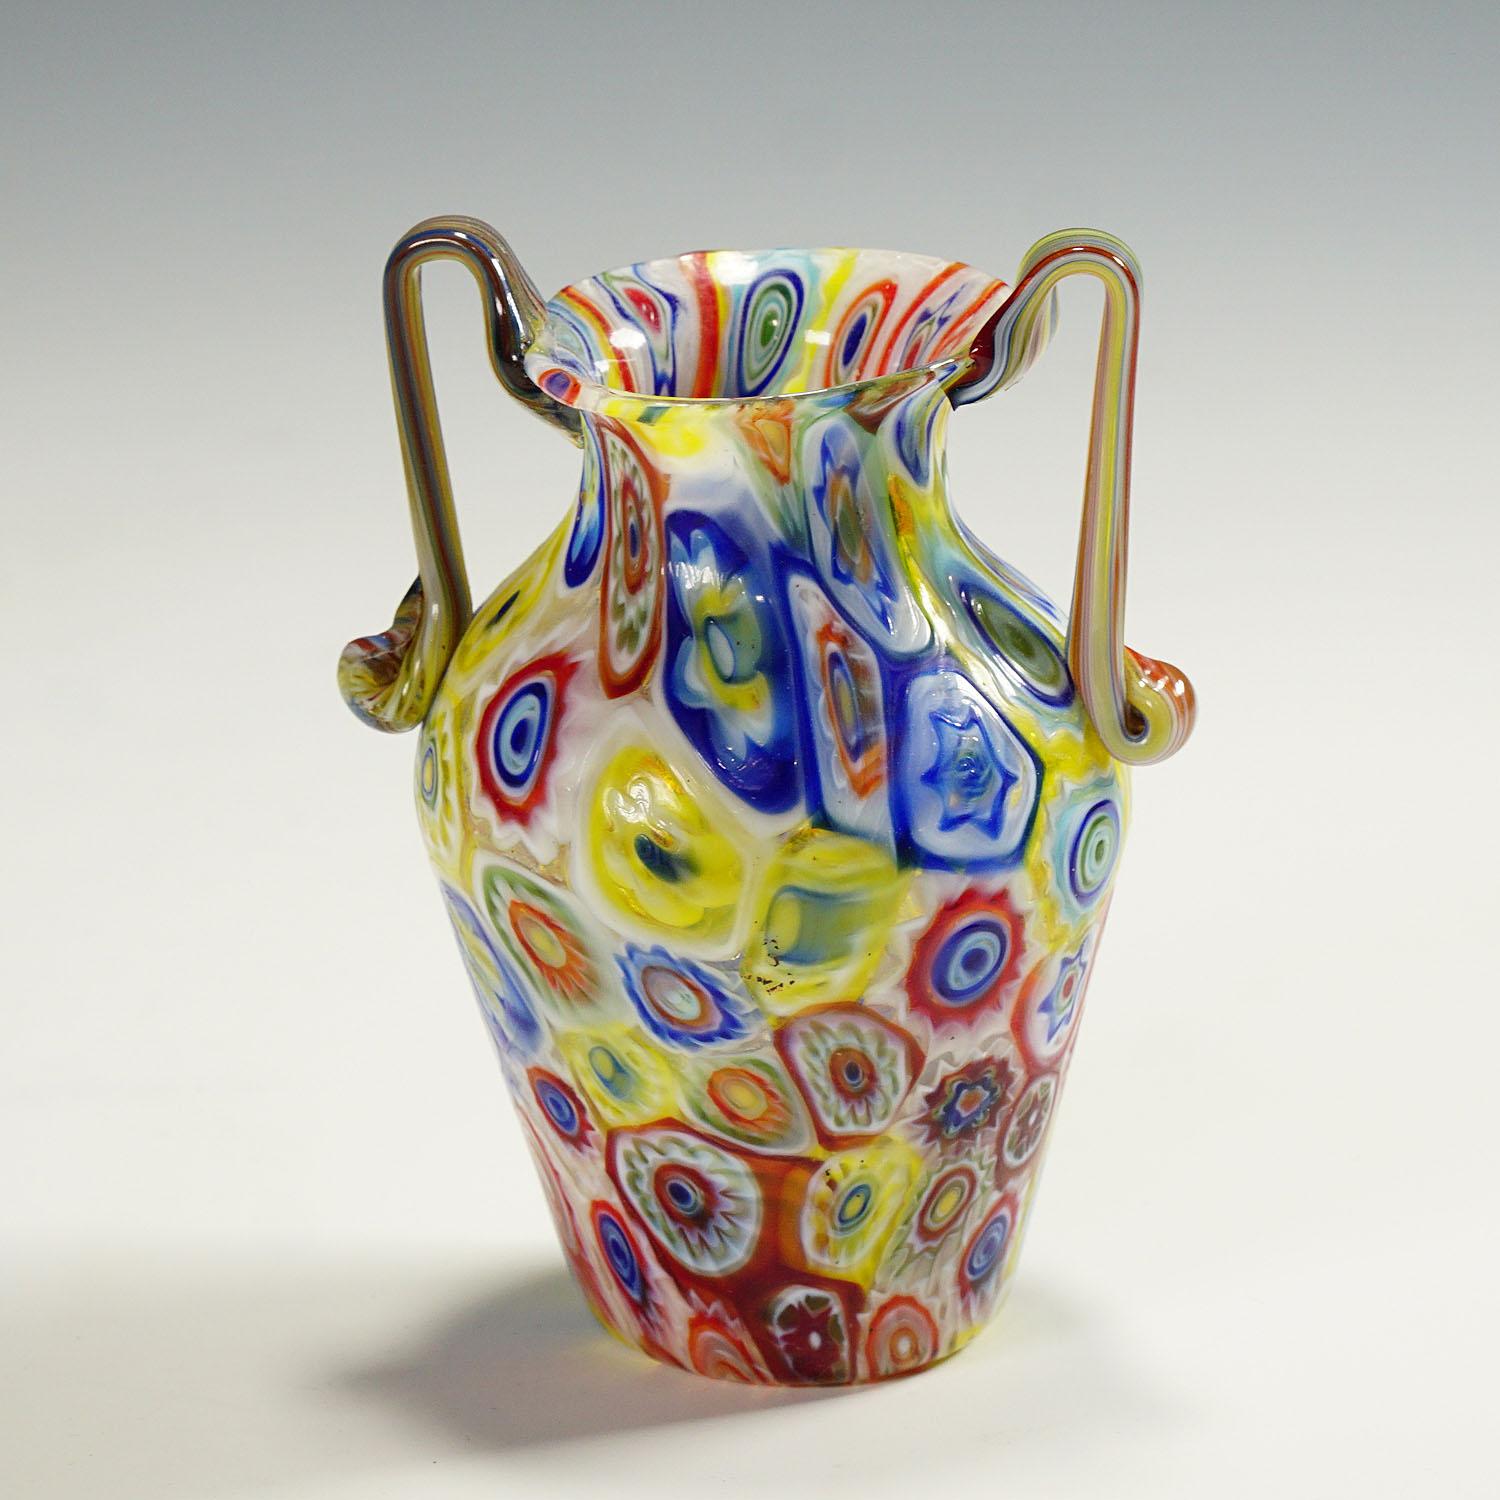 Eine antike Vase aus Murano-Muranoglas, hergestellt von Vetreria Fratelli Toso in den 1920er Jahren. Die Vase mit zwei Henkeln ist aus dünnem Glas mit mehrfarbigen, durchscheinenden Millefiori-Murrinen gefertigt. Im Gegensatz zu den meisten